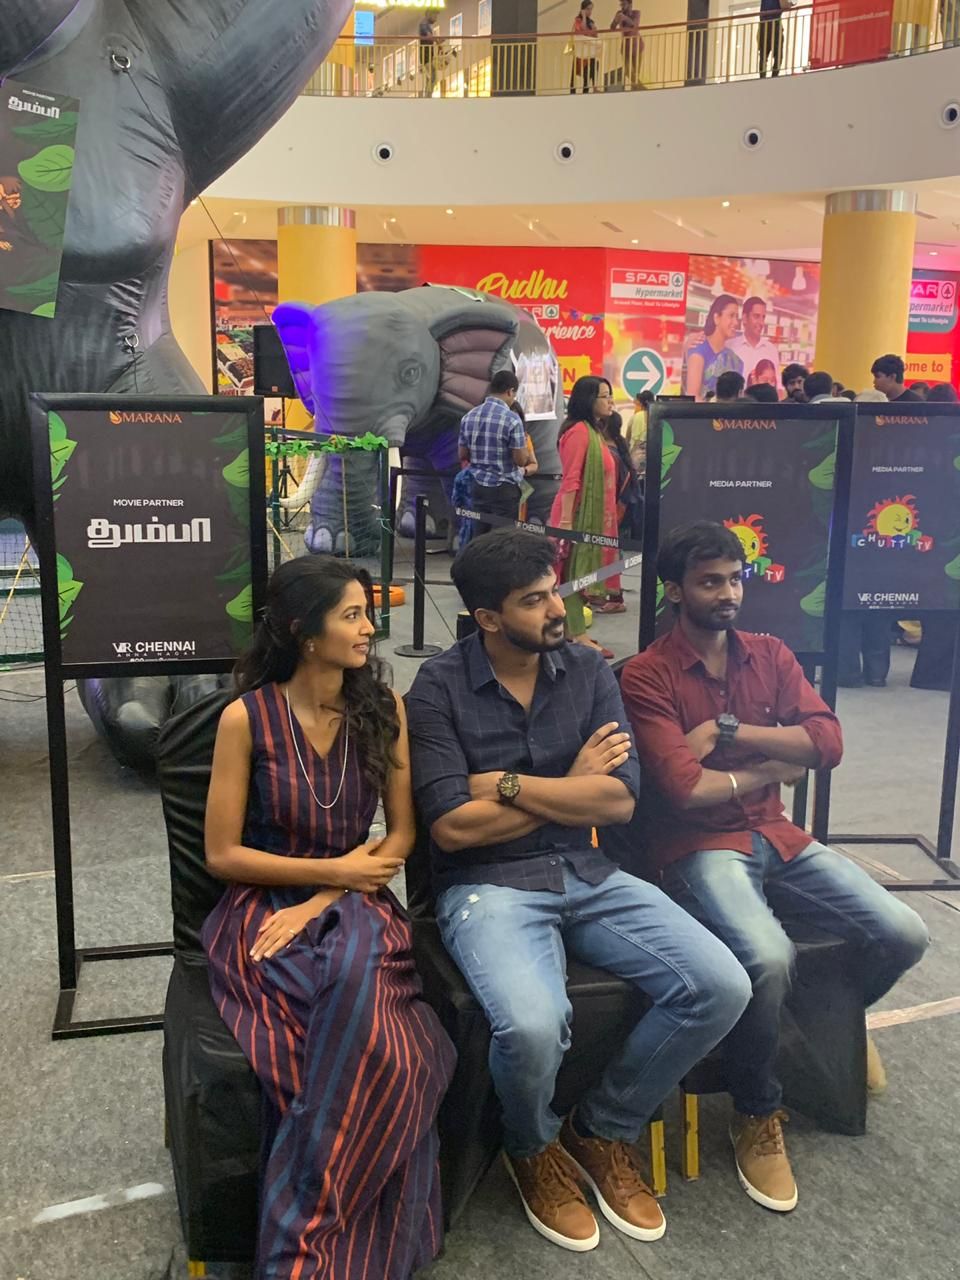 Thumbaa Team At Hakuna Matata Special Kids Jungle Mania Event At VR Chennai Pics Tamil Gallery